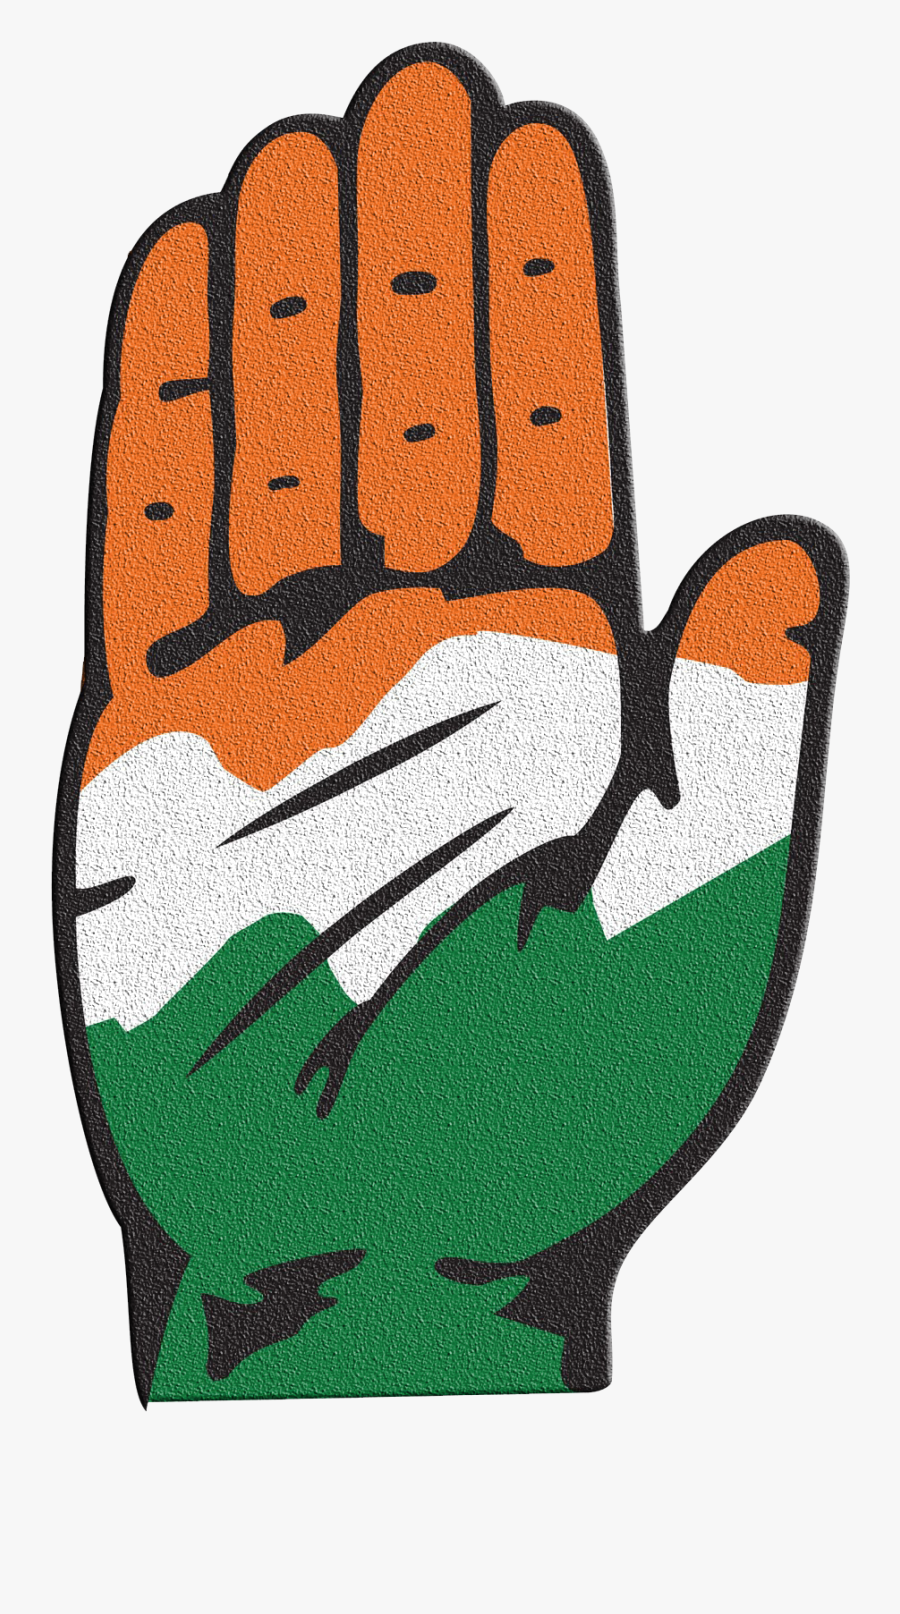 Congress Logo Png Transparent Image - Indian National Congress Logo, Transparent Clipart